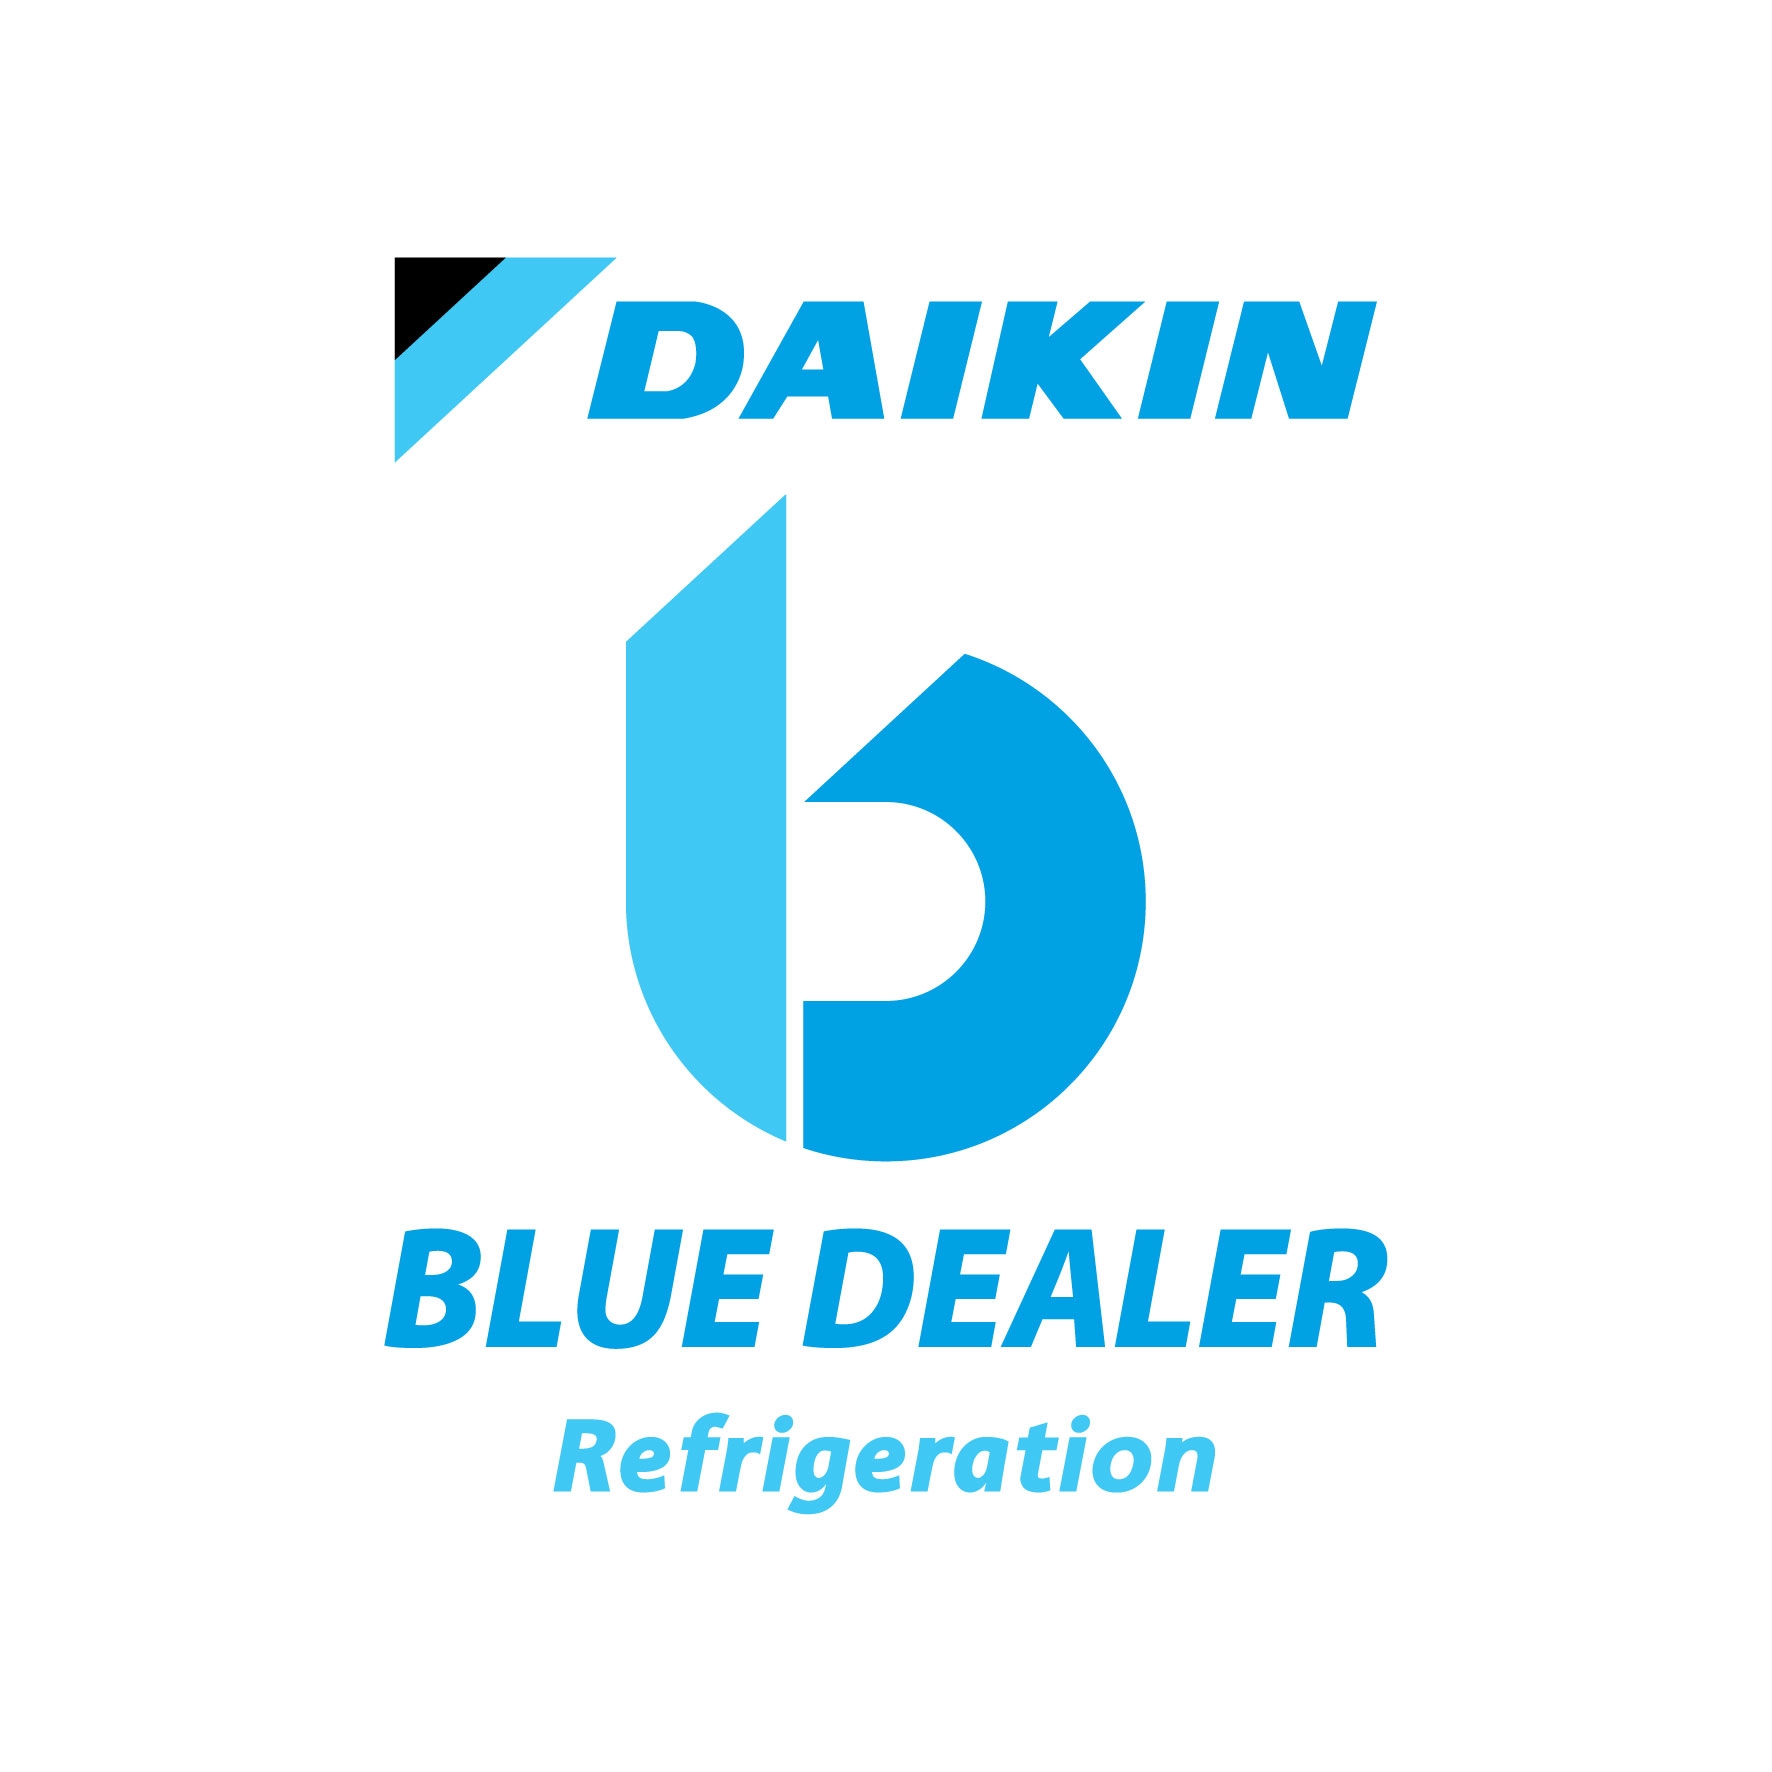 Blue dealer Refrigeration